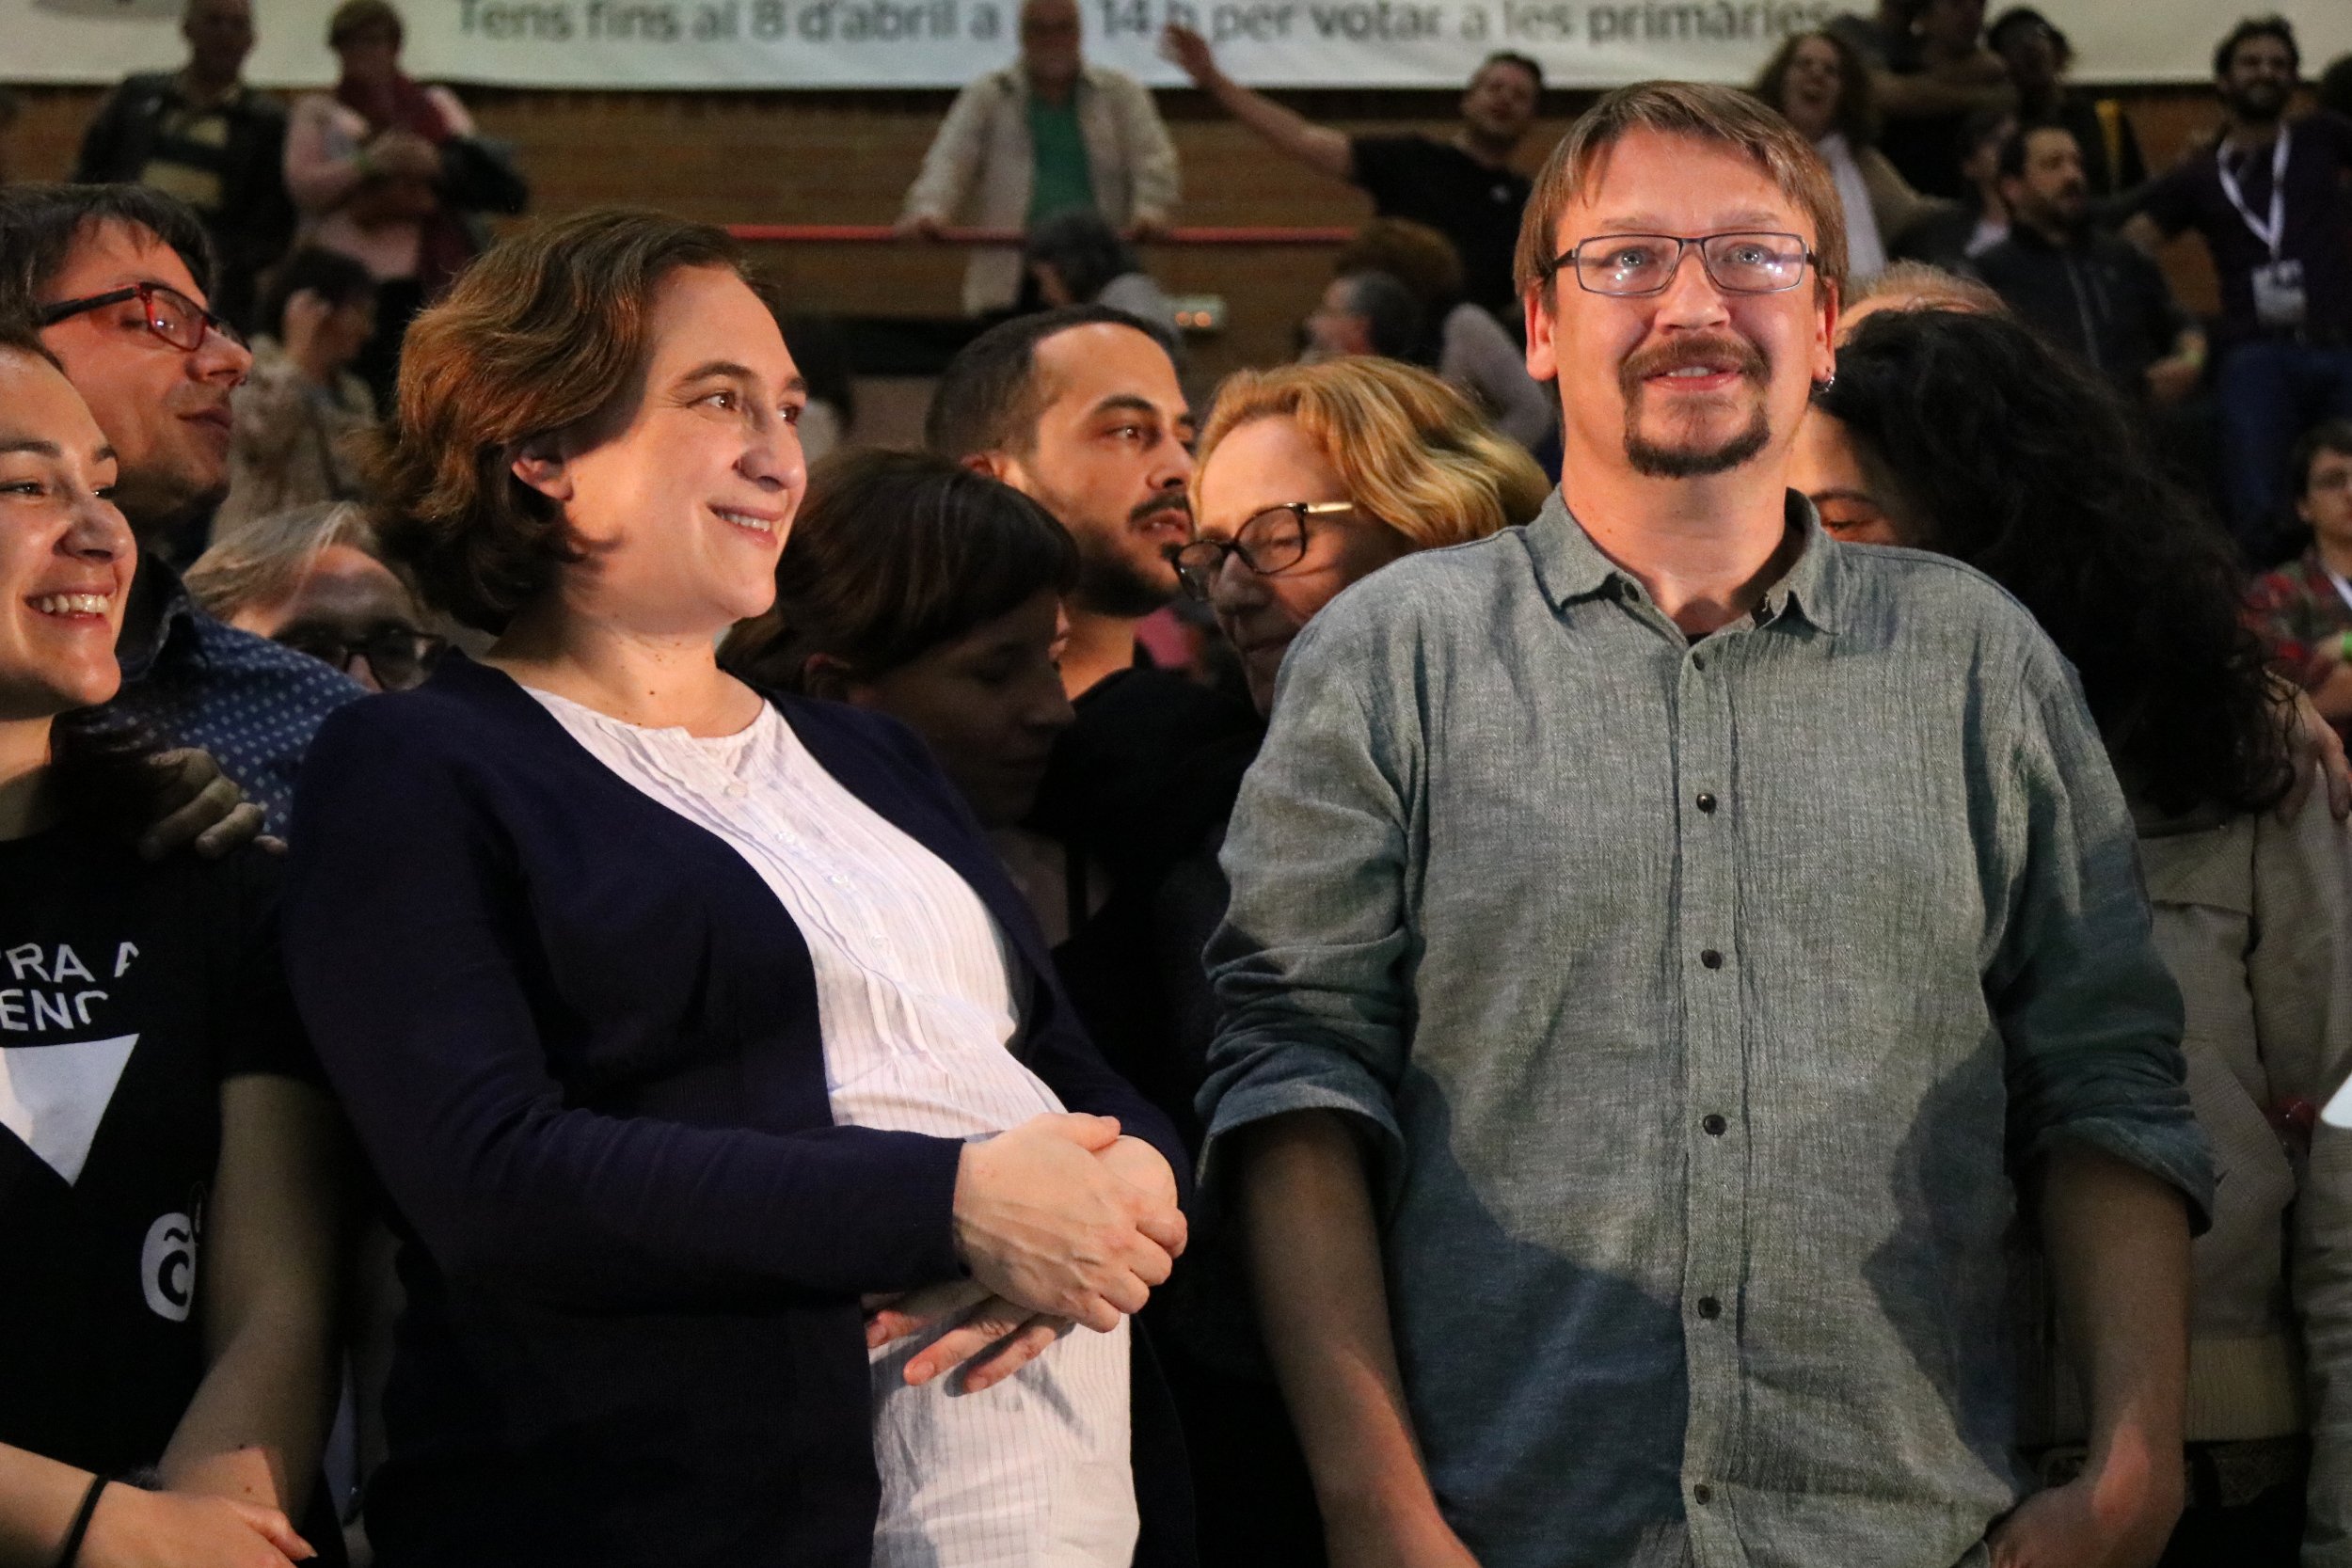 La proposta dels comuns de crear una República catalana dins d'Espanya provoca estupor